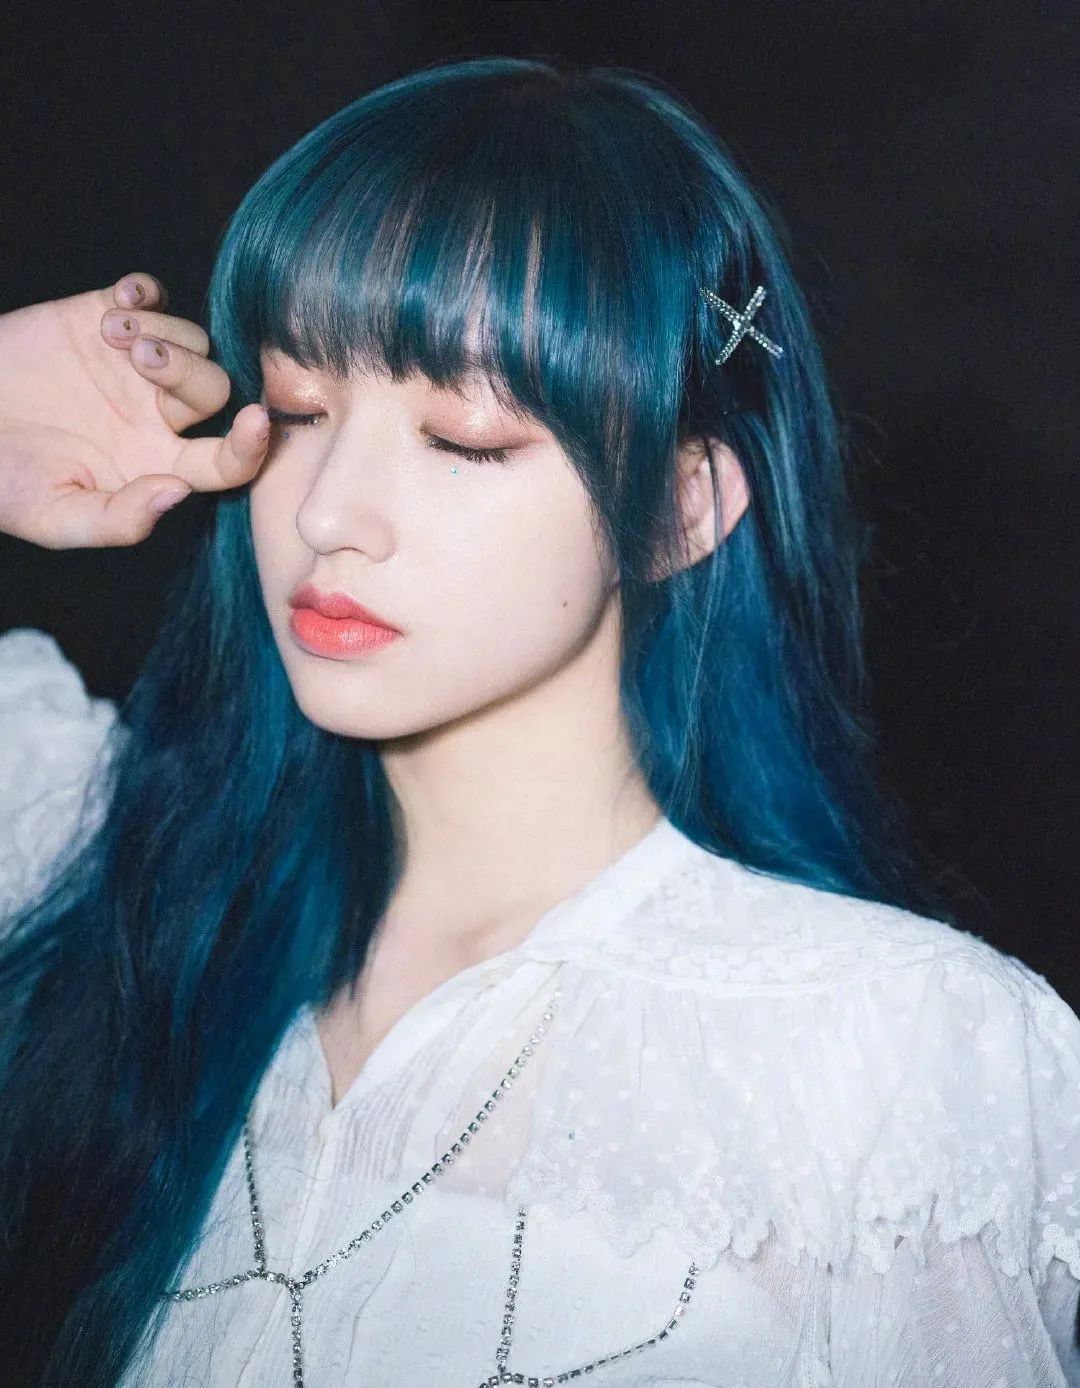 美少女程潇的发色蓝中带绿,整体上还透着一点青色的调调.